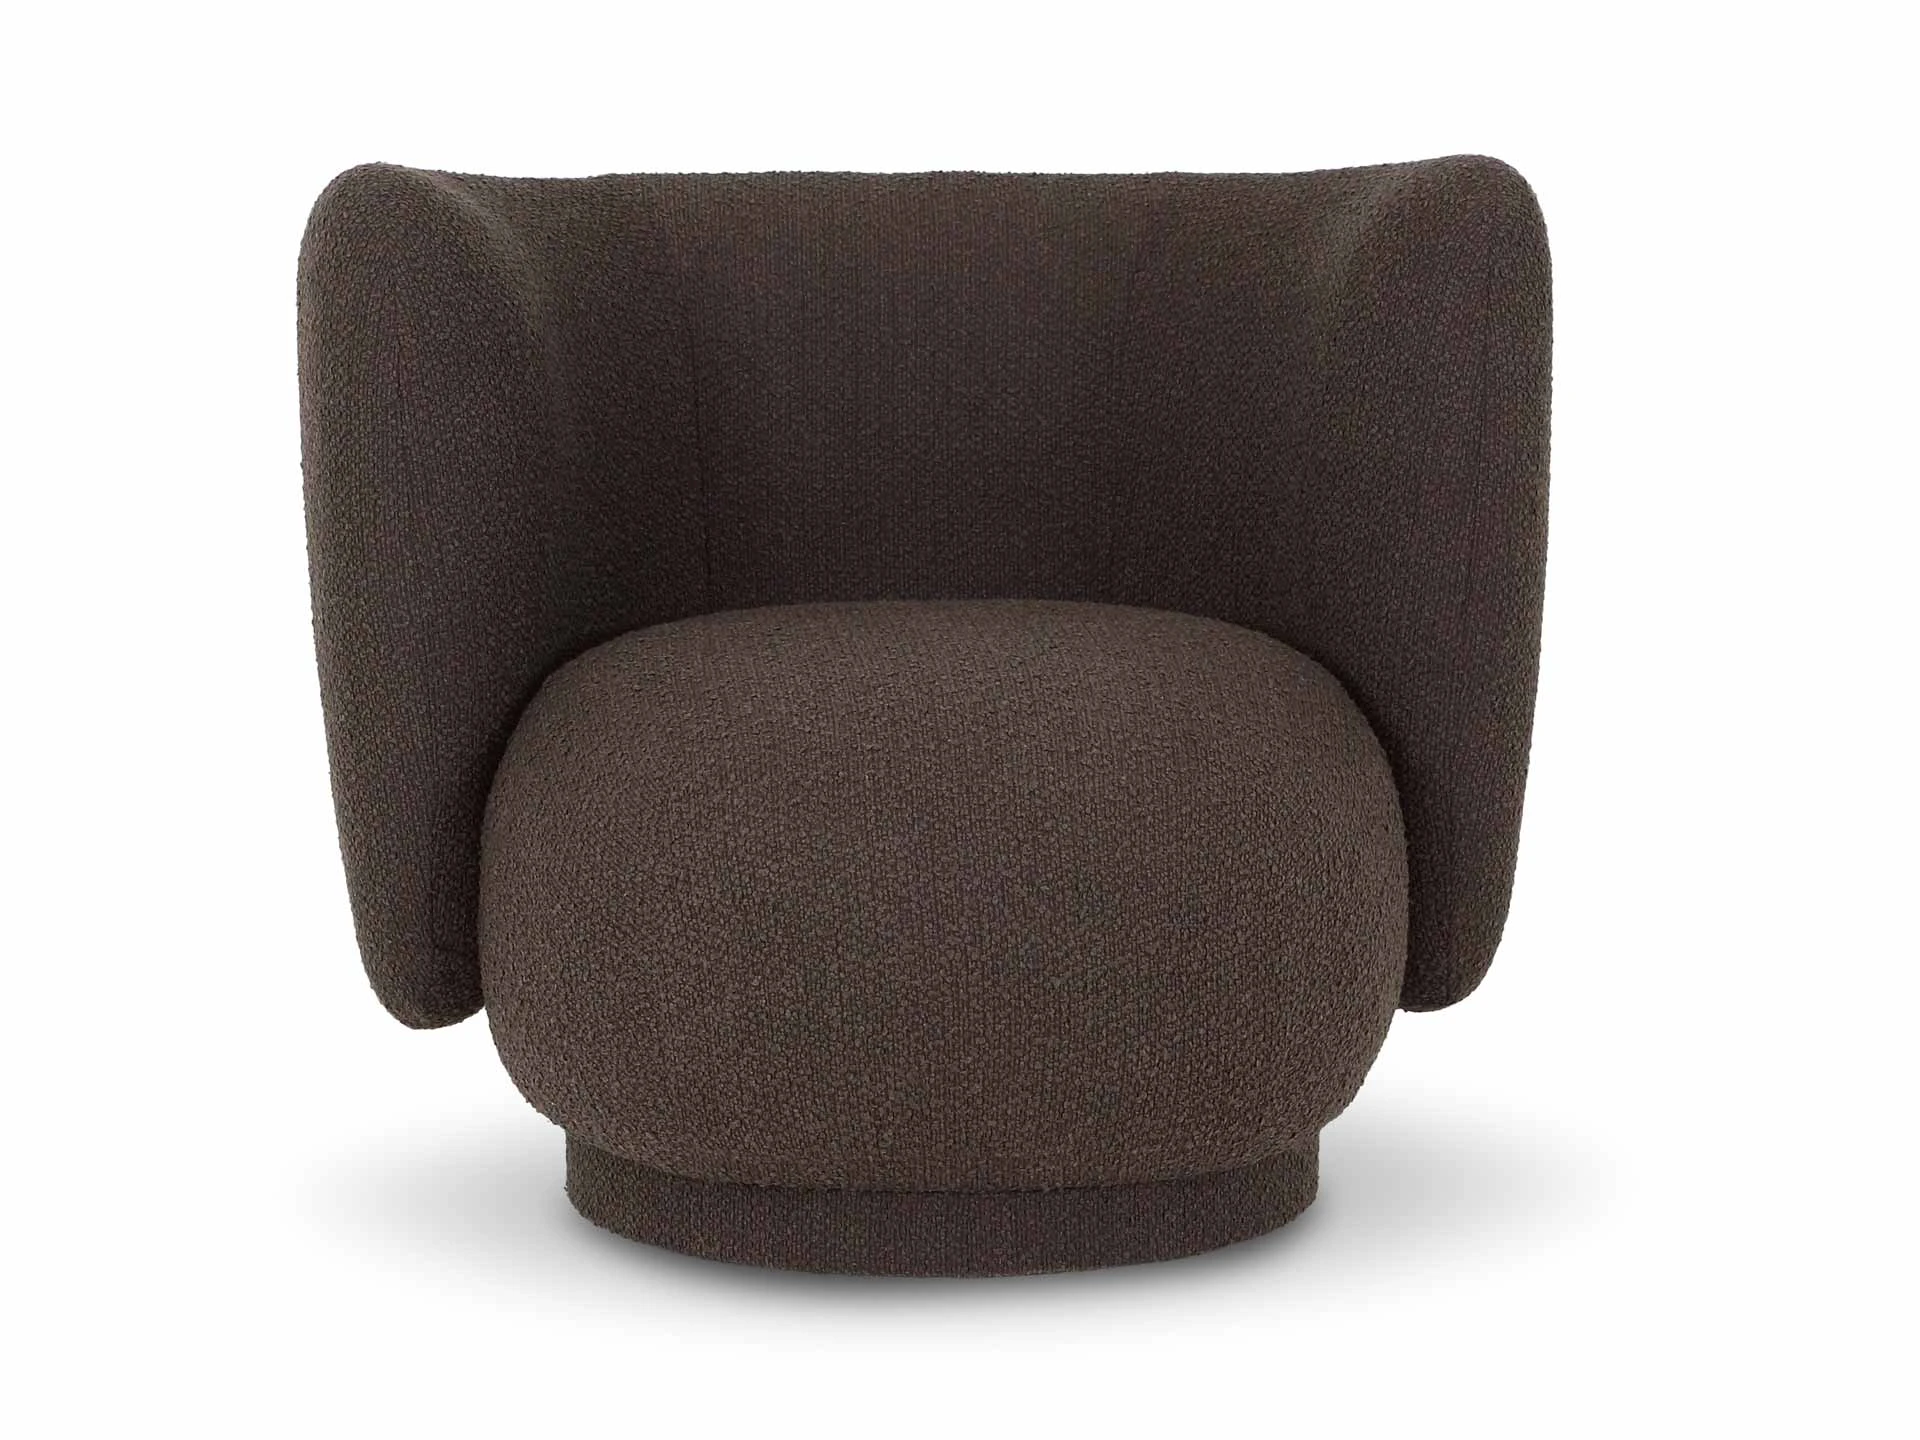 Кресло вращающееся Lucca коричневый 823170